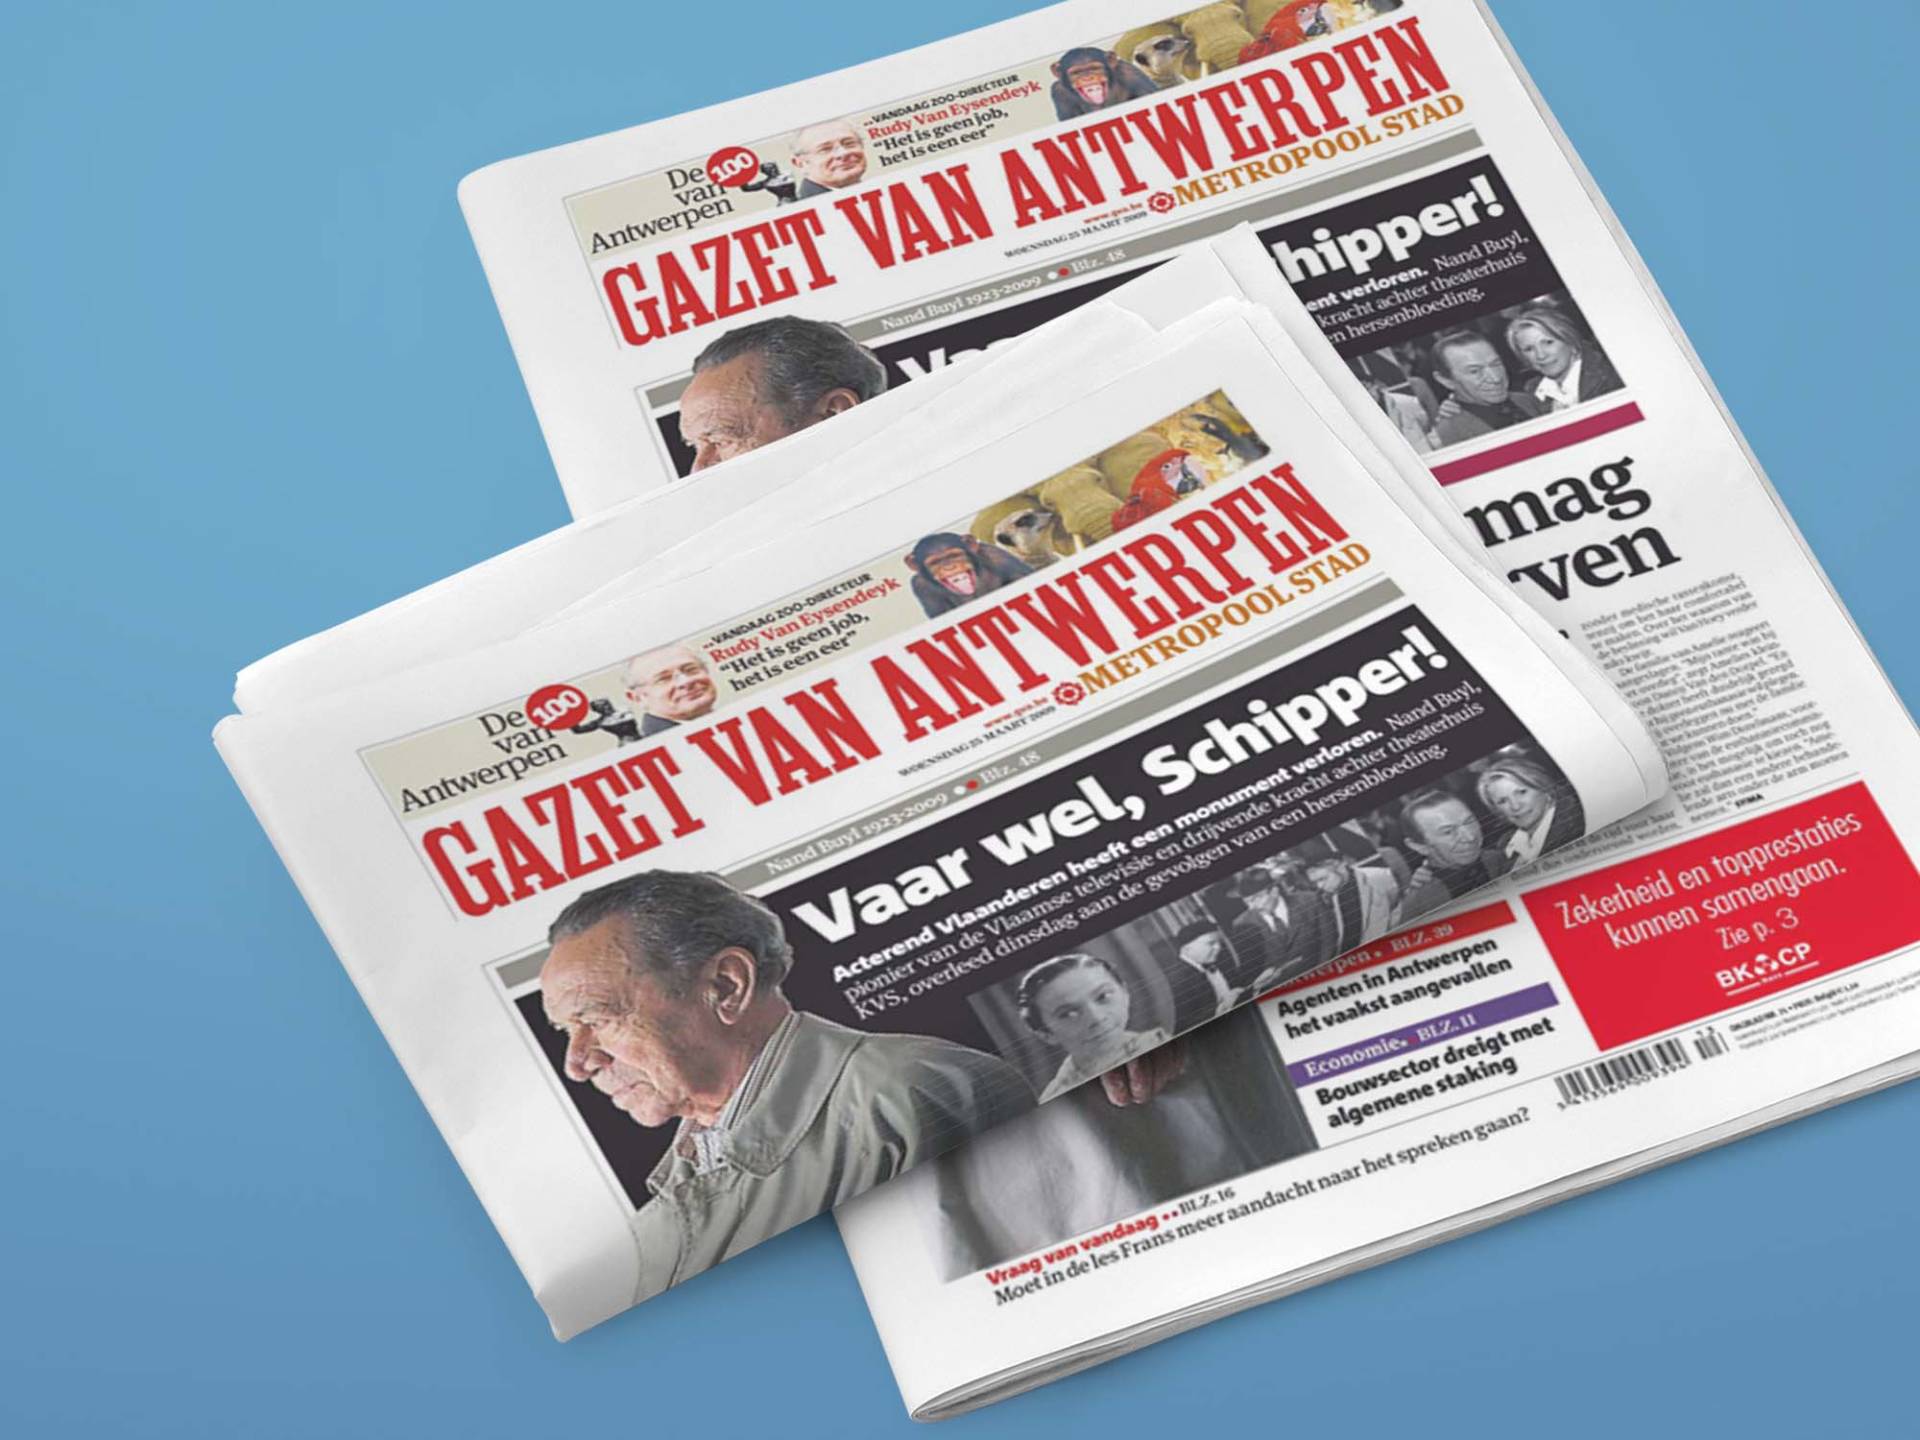 Gazet_Van_Antwerpen_01_Wenceslau_News_Design